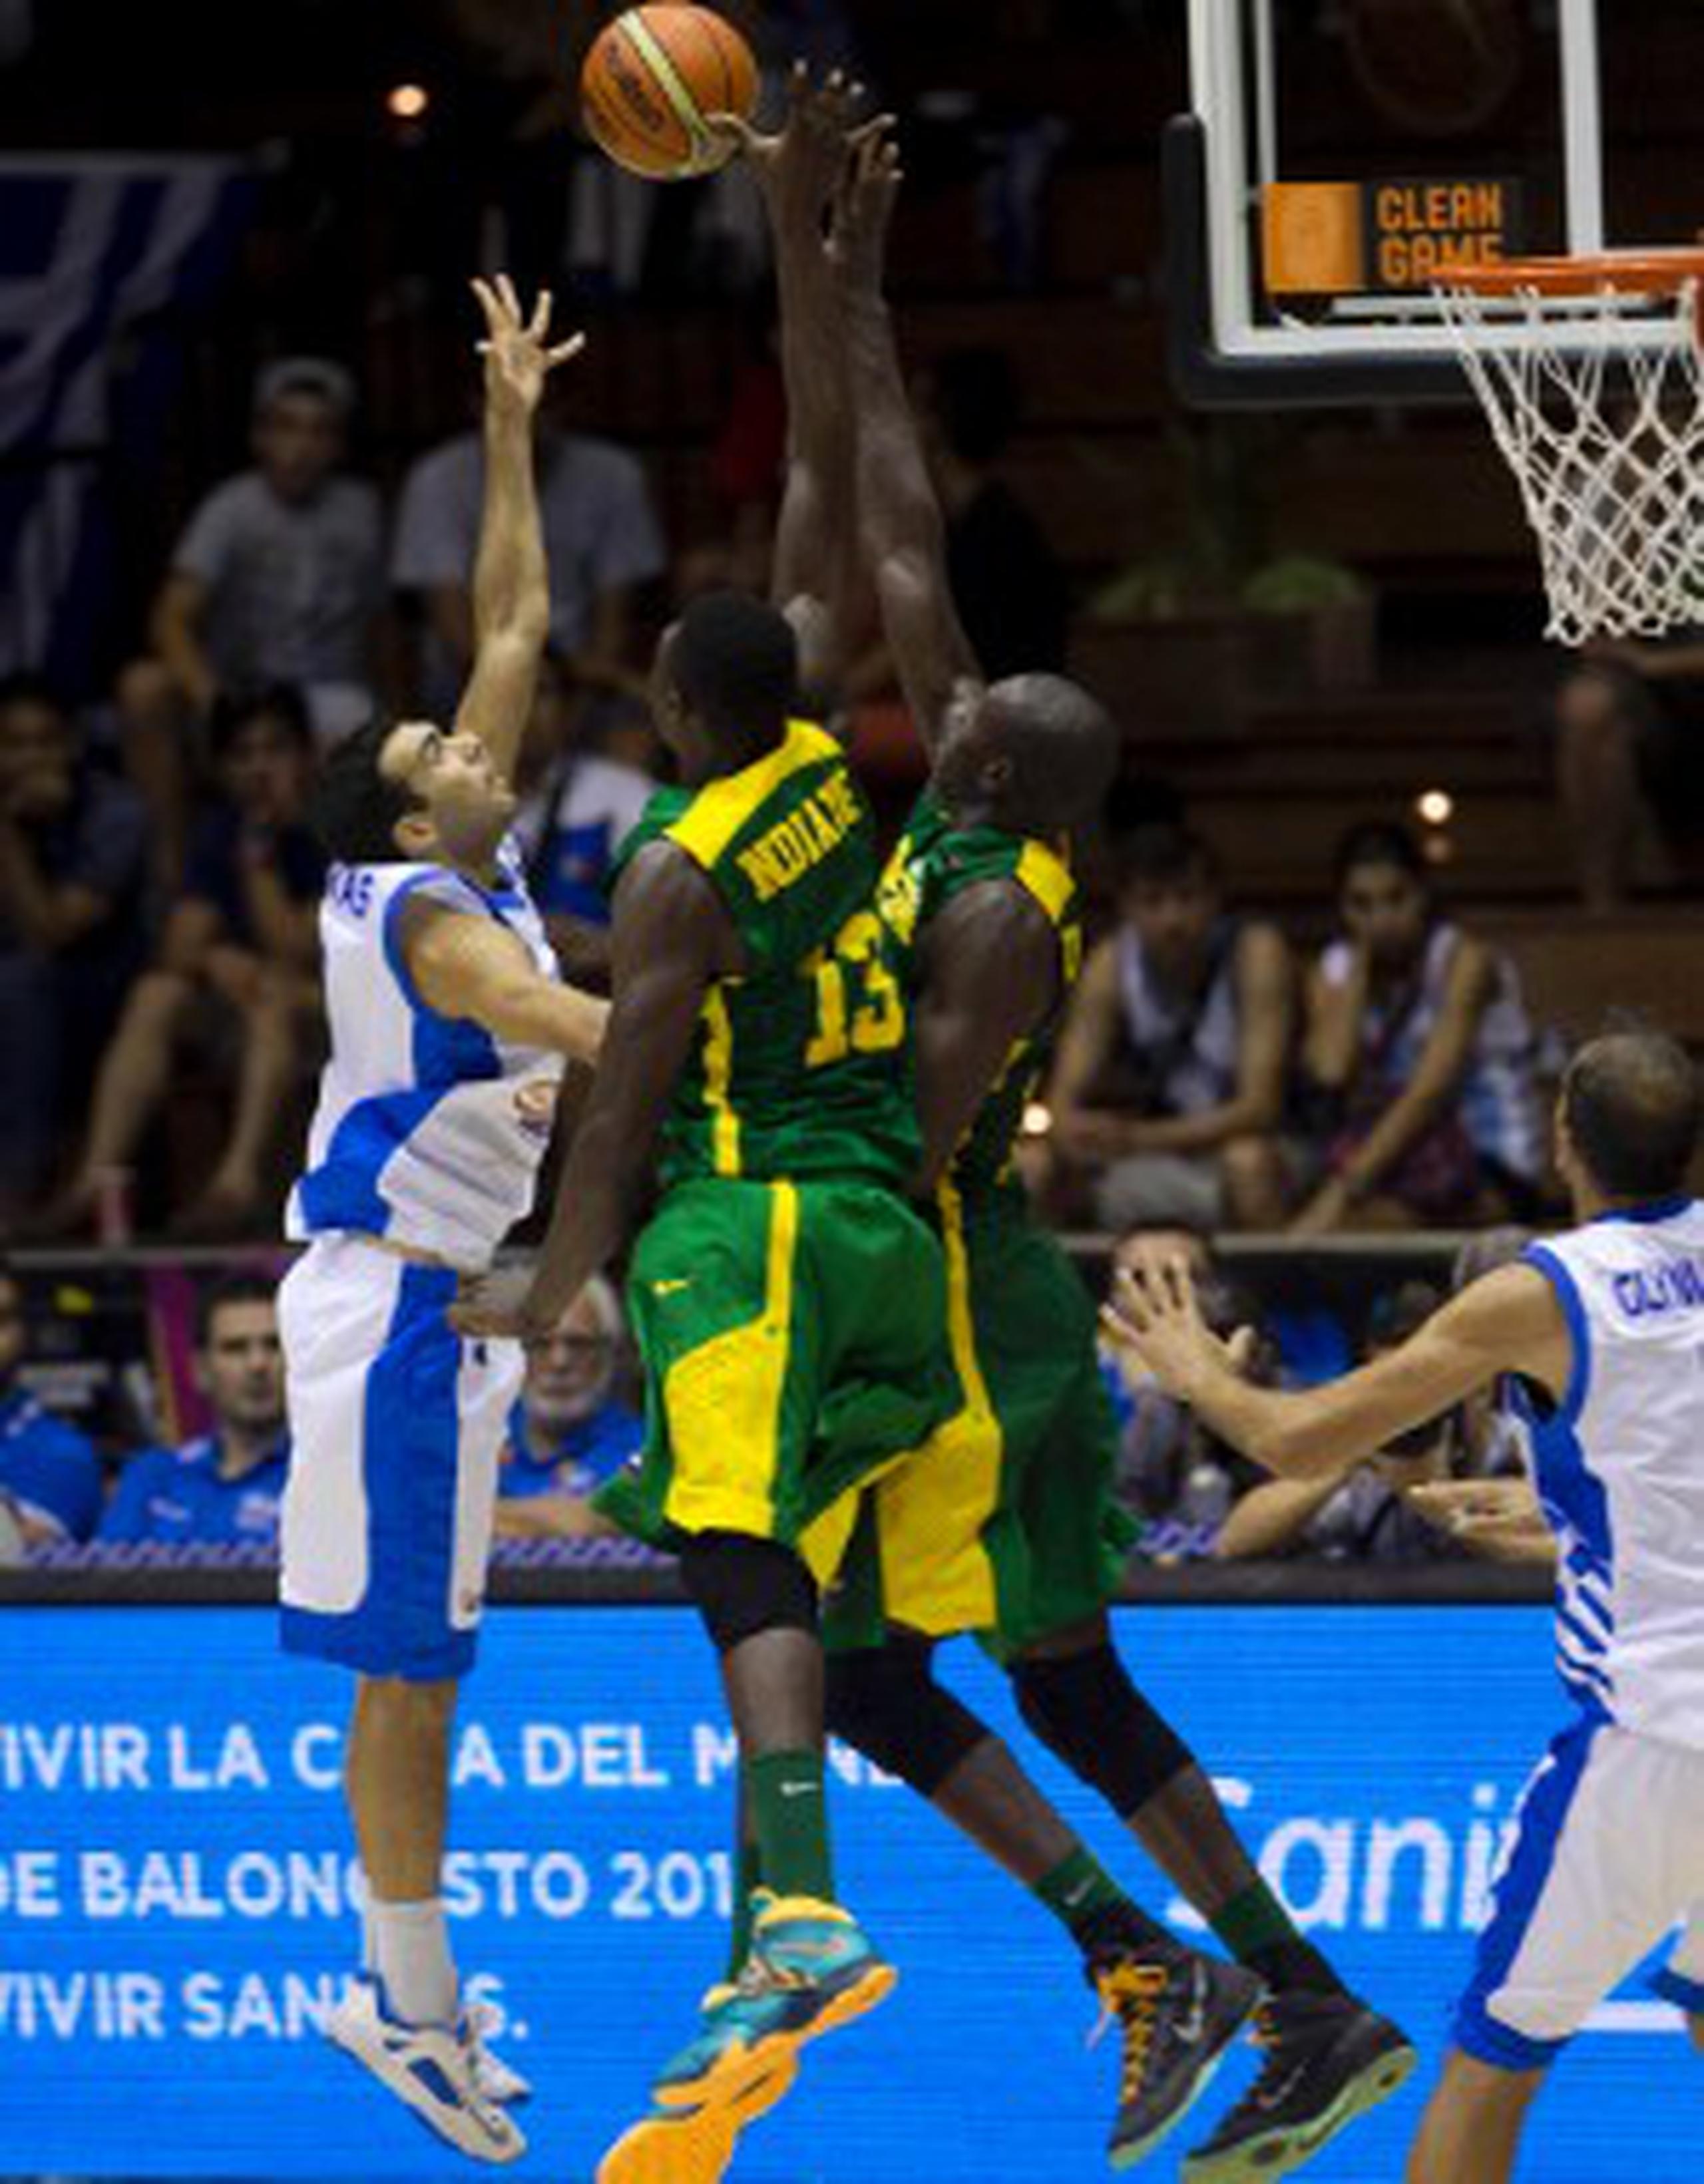 El conjunto senegalés se destaca por su juego físico y atlético tal y como demuestra esta imagen en su duelo contra Grecia. (Enviado especial / xavier. araujo@gfrmedia.com)